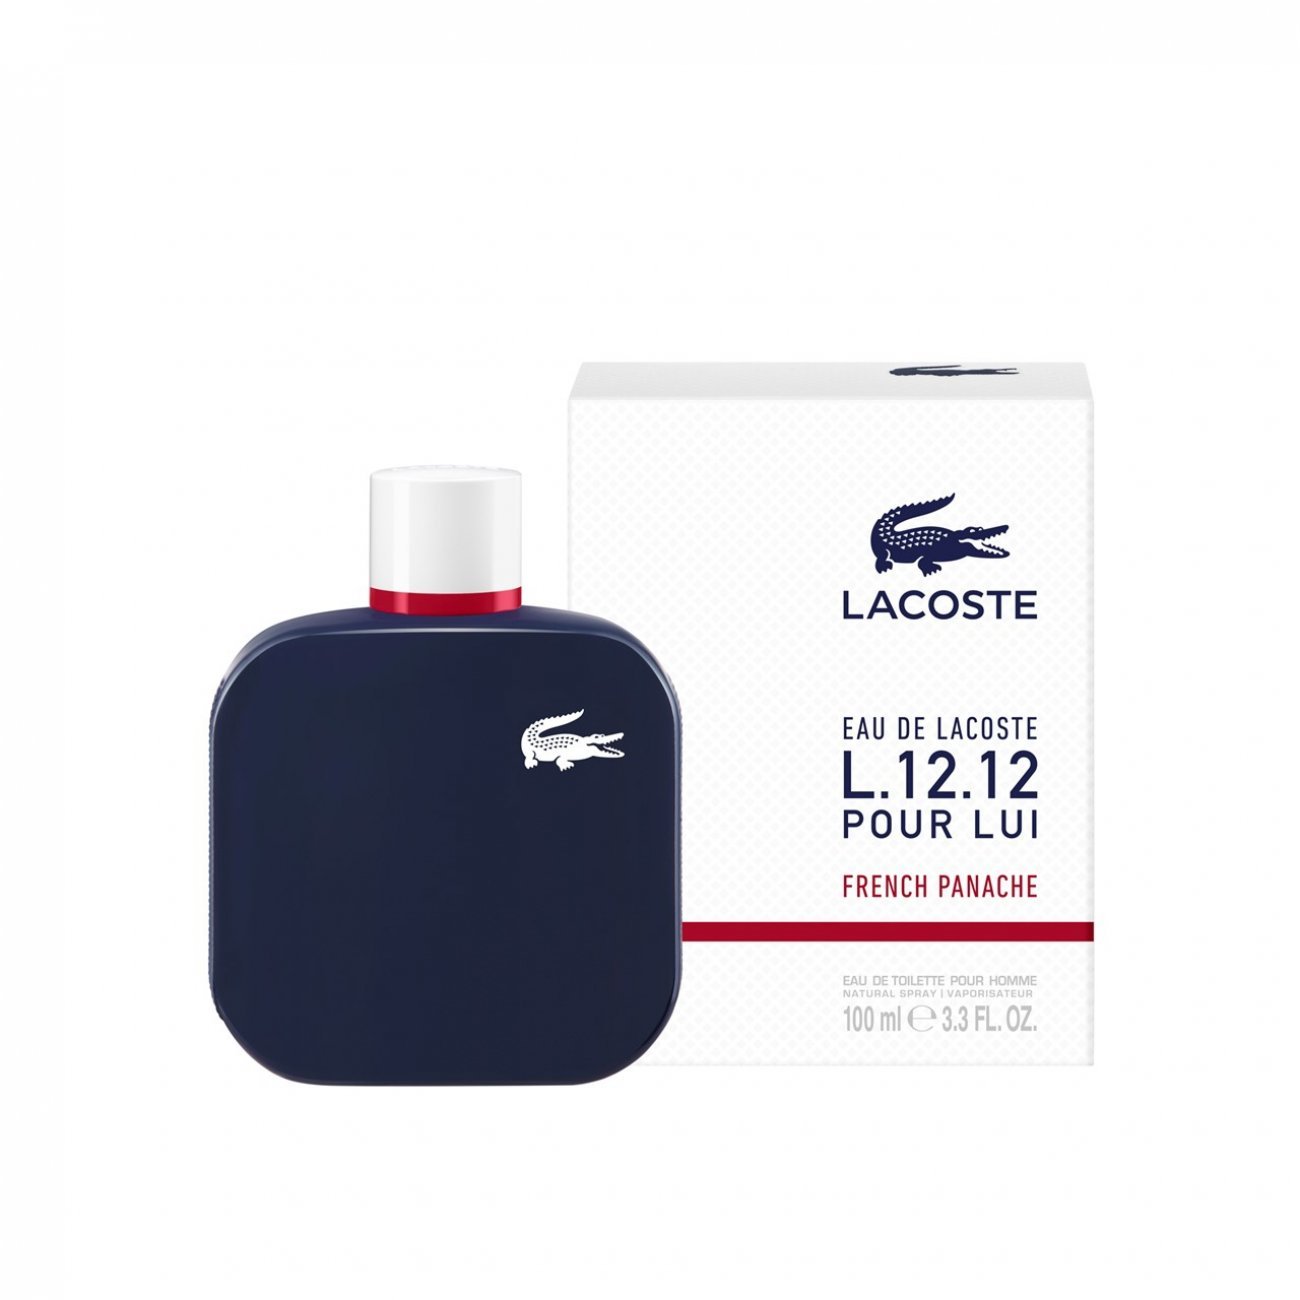 impuls Lover højttaler Acquistare Lacoste L.12.12 Pour Lui French Panache Eau de Toilette 100ml ·  Italia